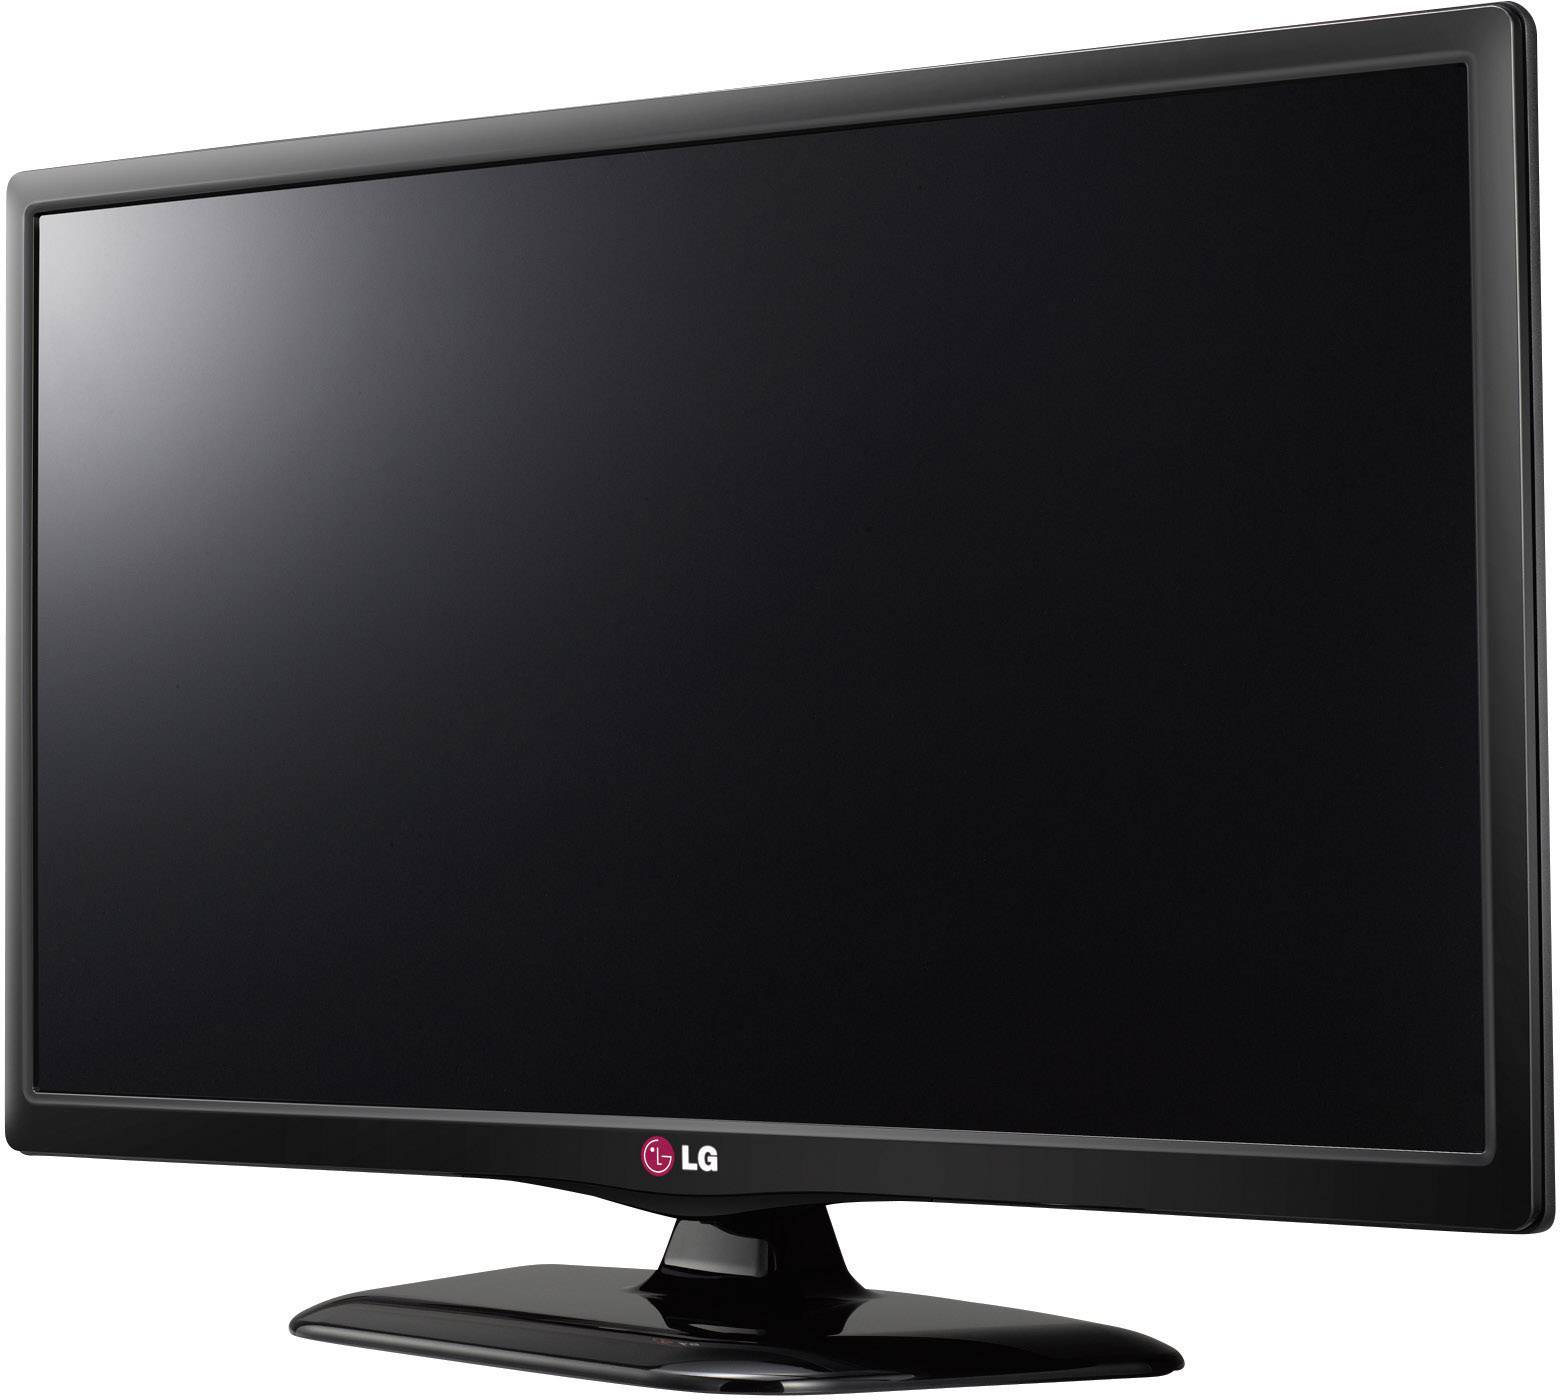 Lg 10 телевизор. LG 28lb450u. Телевизор LG 28lb450u. Телевизор LG 28lb450u 28". Телевизор led 22 LG 22lf450u.